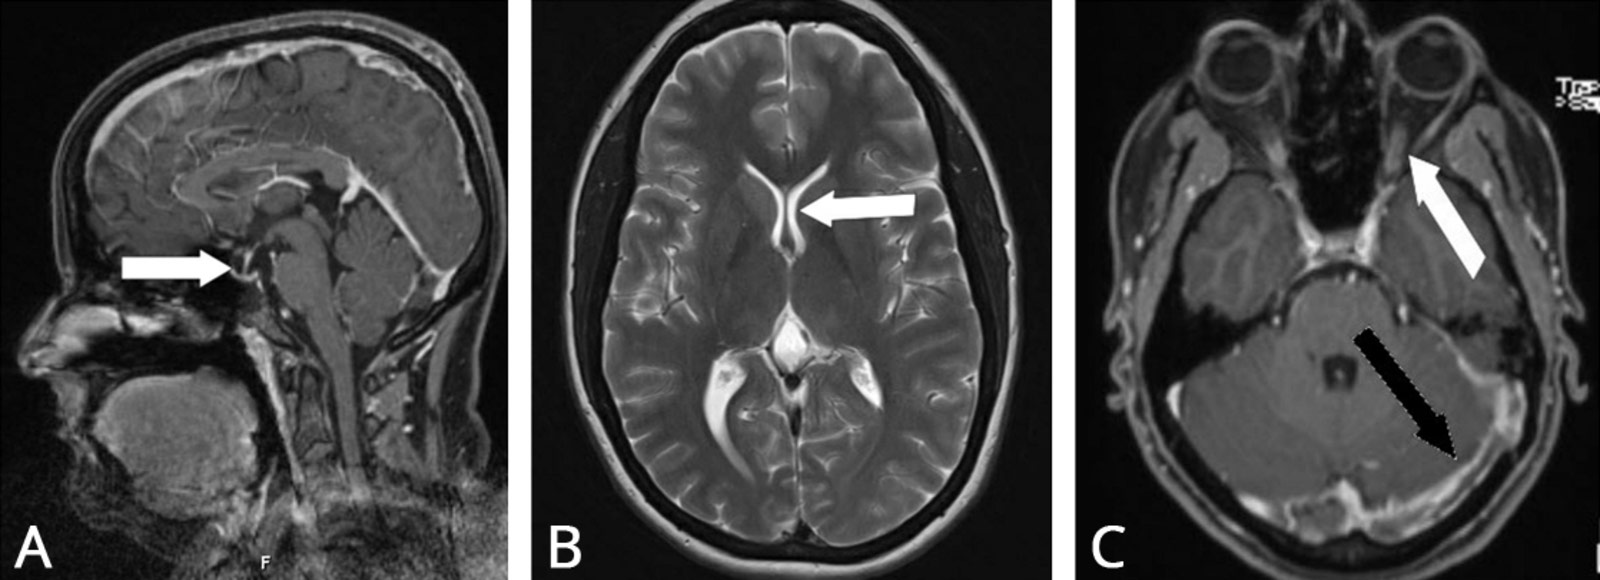 Drei MRI-Bilder einer idiopathischen intrakraniellen Hypertension mit unterschiedlicher Ausprägung